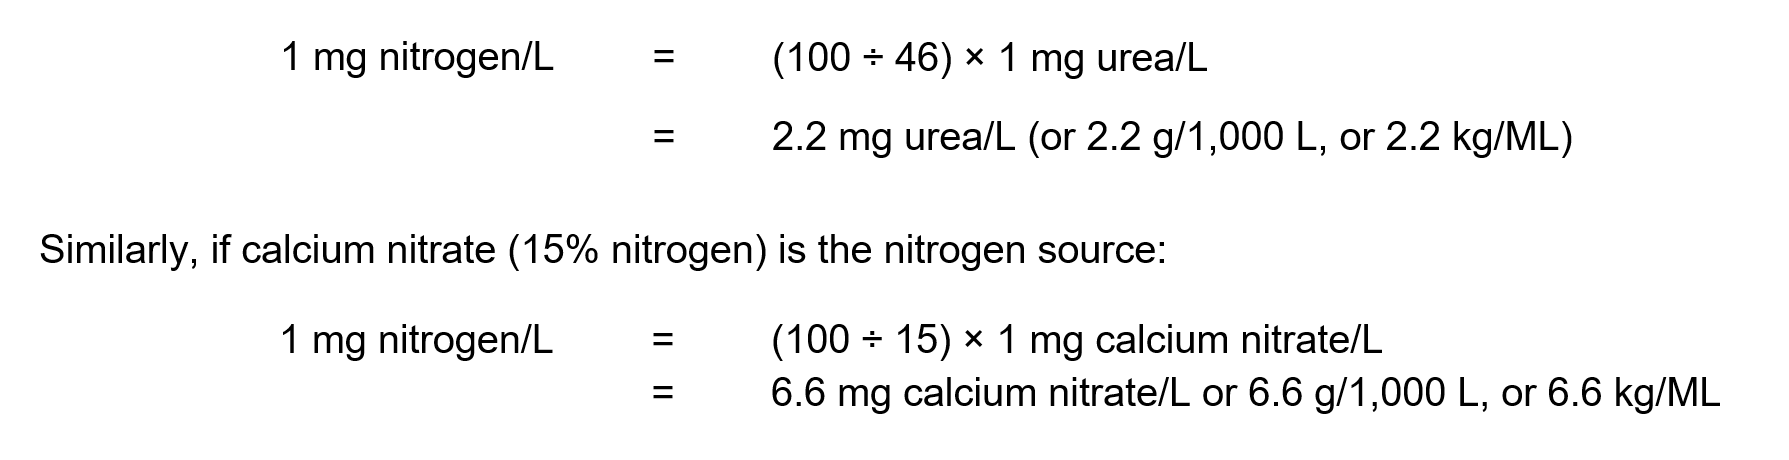 Image of equation for nitrogen source